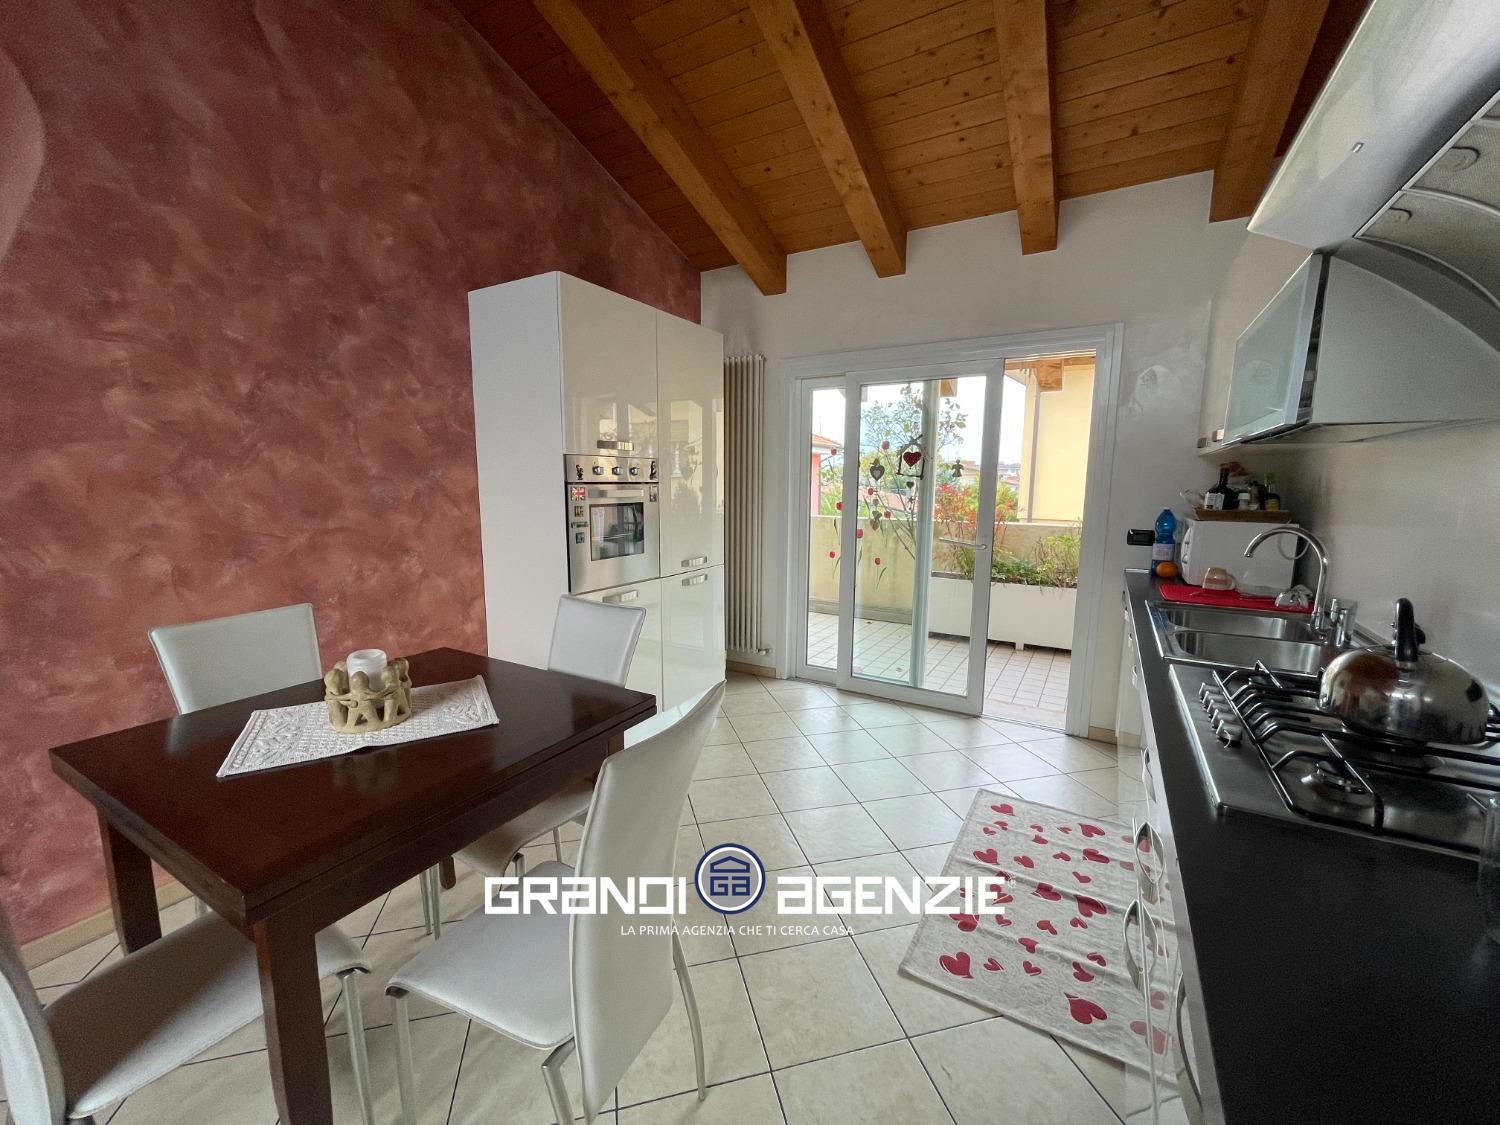 Appartamento in vendita a Treviso, 3 locali, prezzo € 119.000 | PortaleAgenzieImmobiliari.it